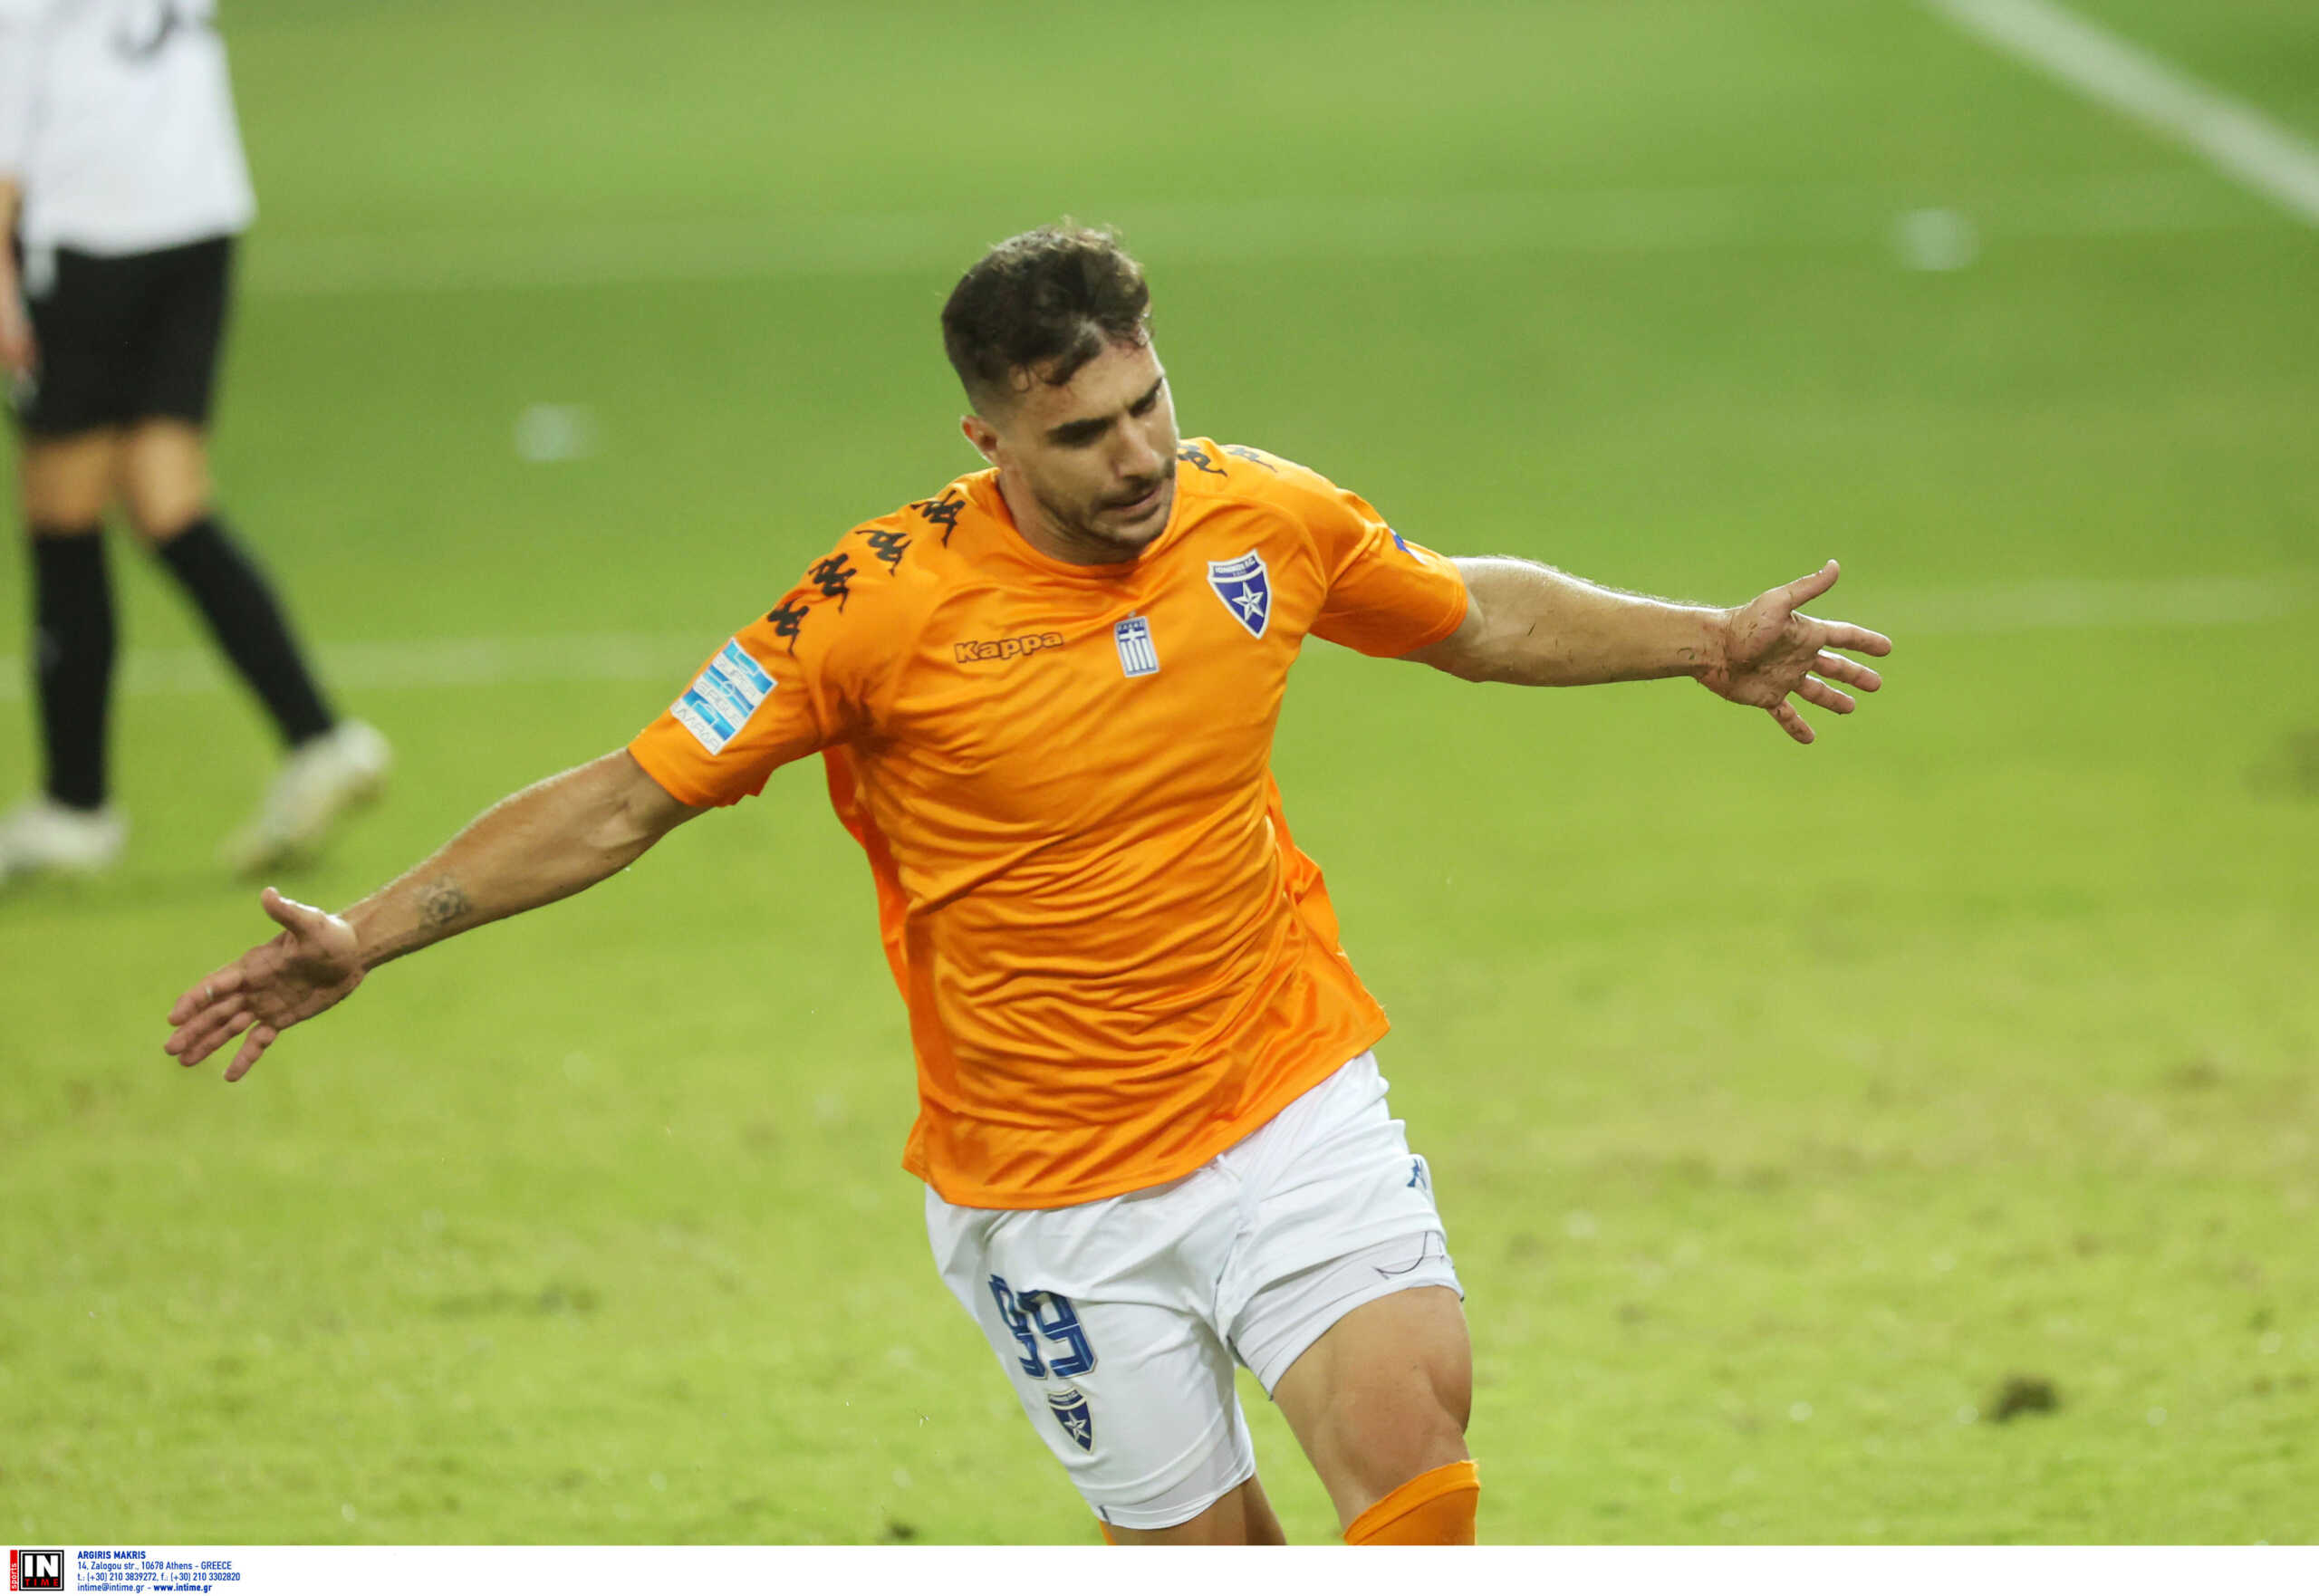 ΟΦΗ – Ιωνικός 0-2: Ο Μάντζης «άλωσε» την Κρήτη για την πρώτη νίκη των Νικαιωτών στη Super League 1